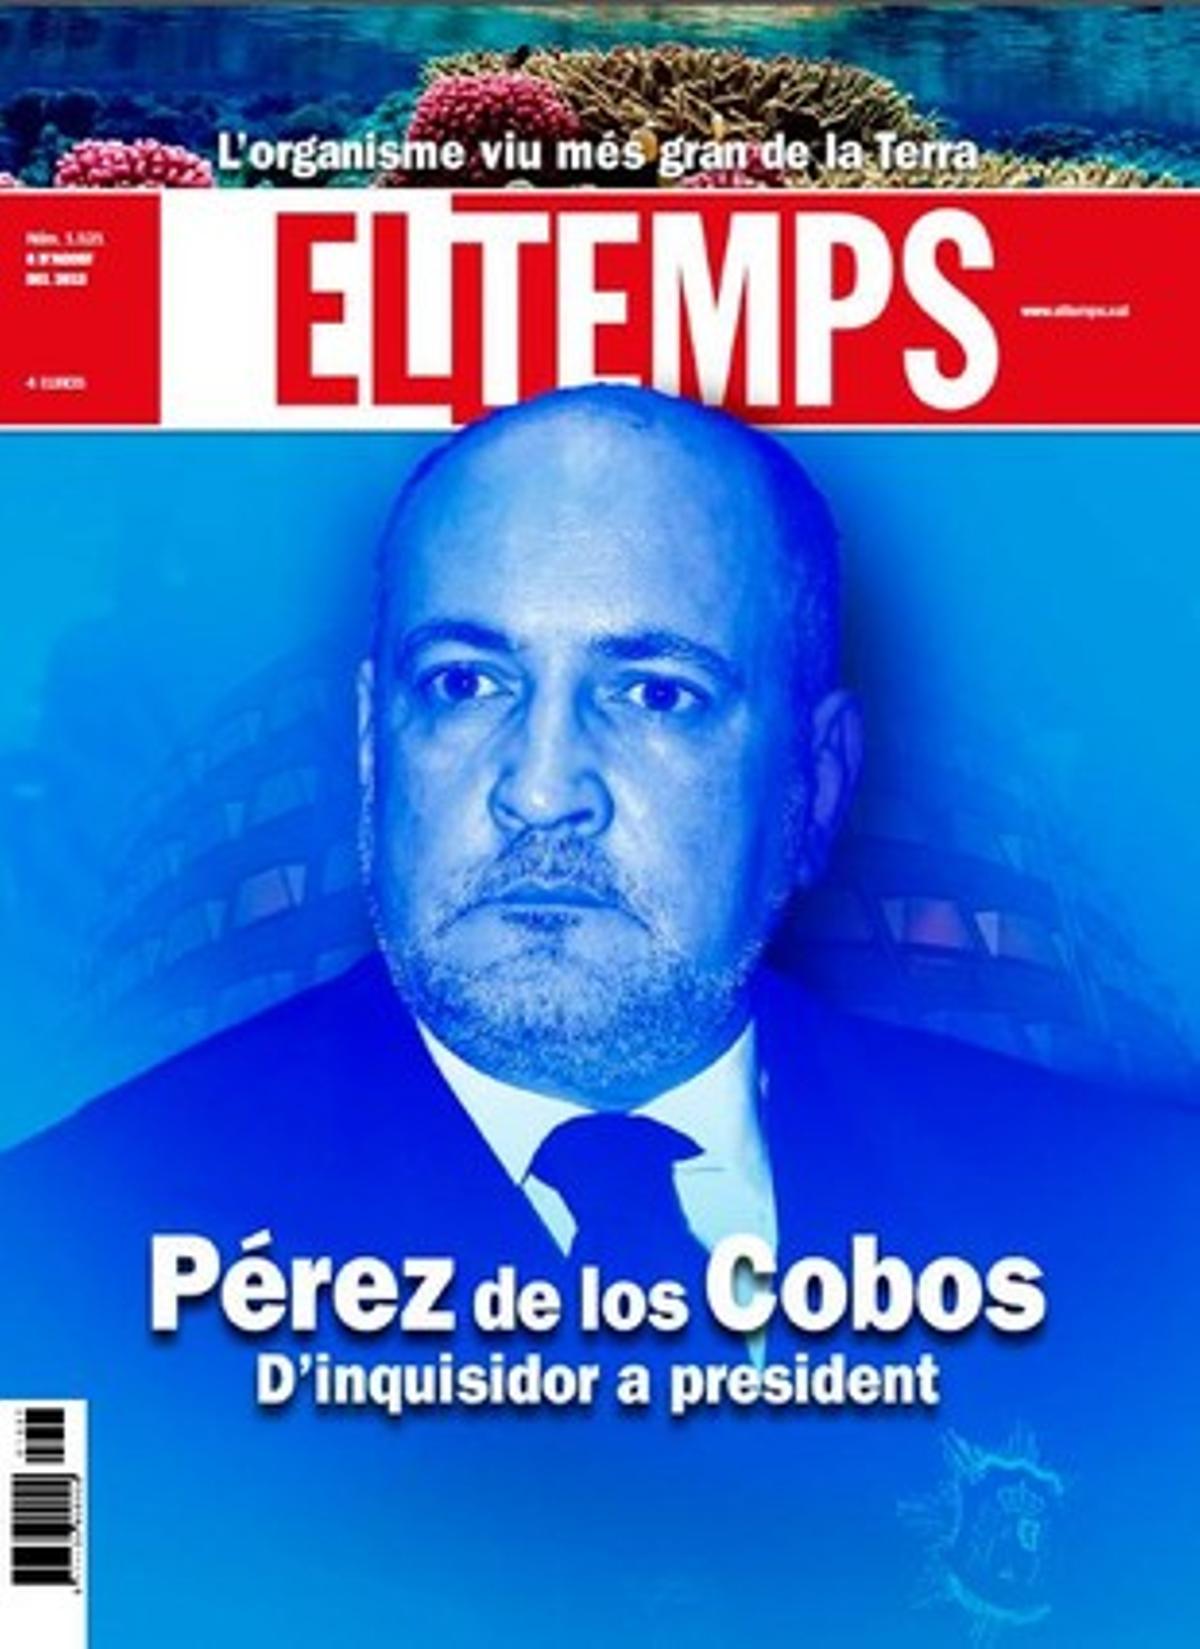 Un extens reportatge del setmanari ’El Temps’ destapa els episodis més foscos del president del TC.